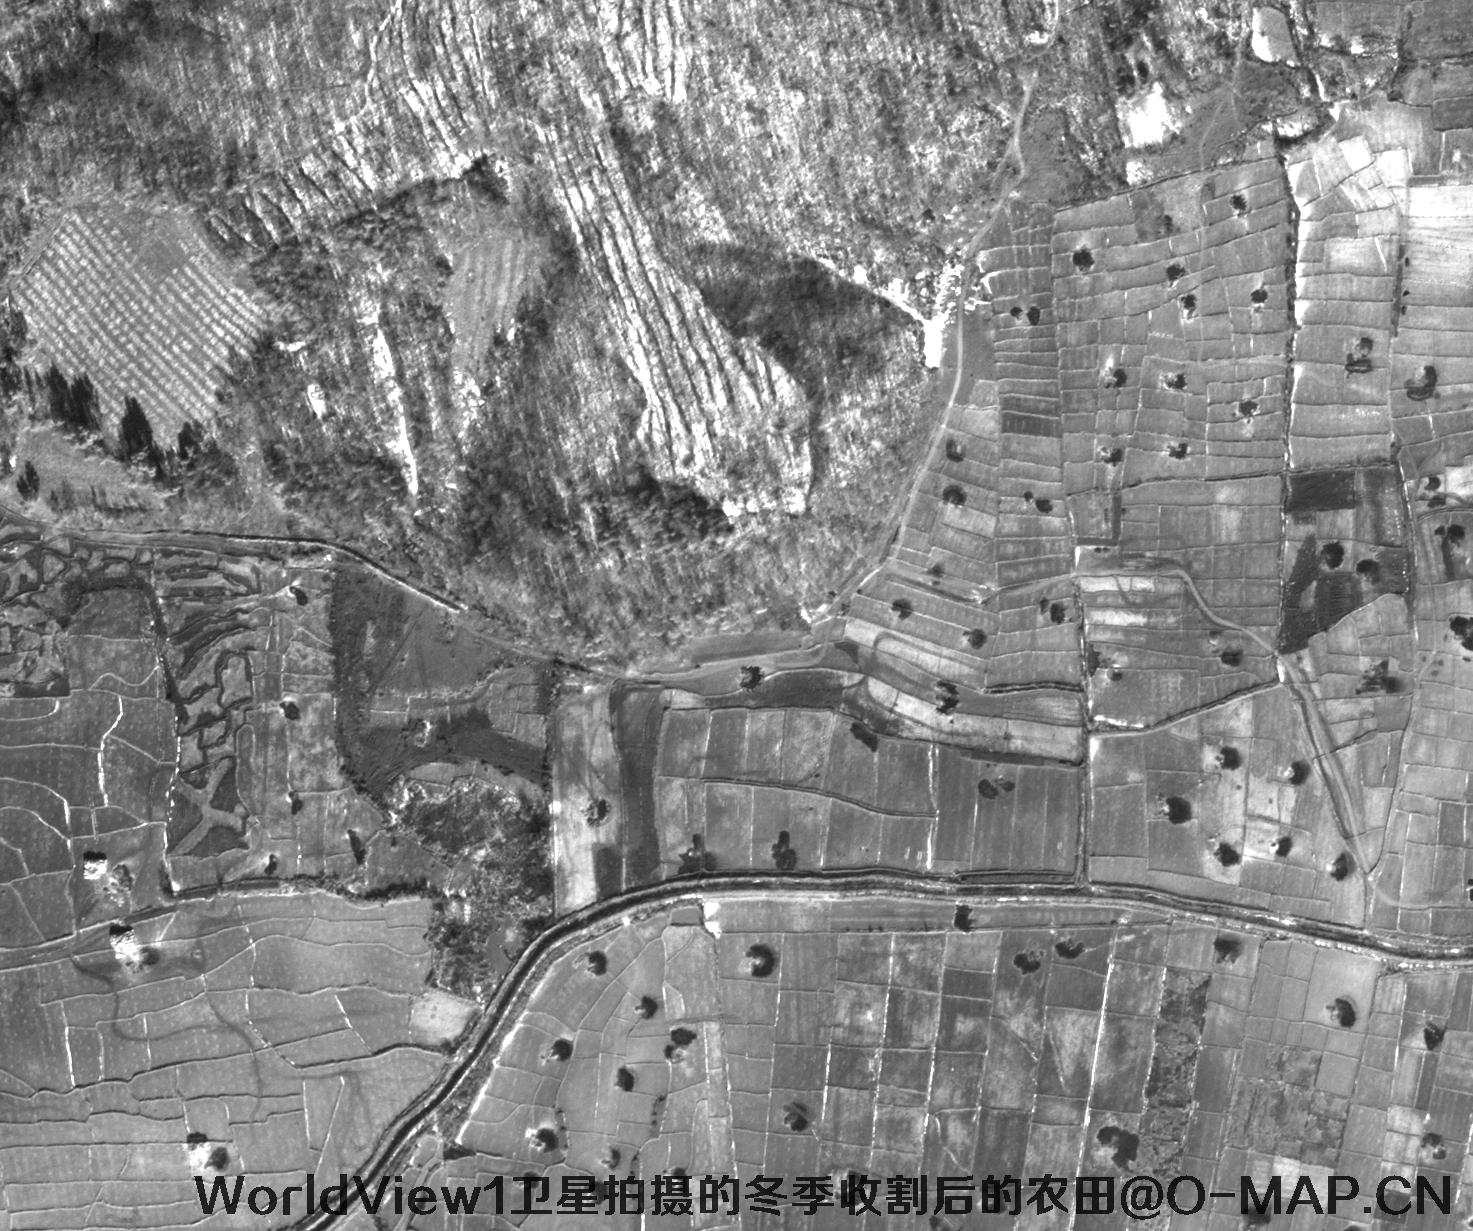 WorldView1卫星拍摄的黑龙江省冬季收割后的农田